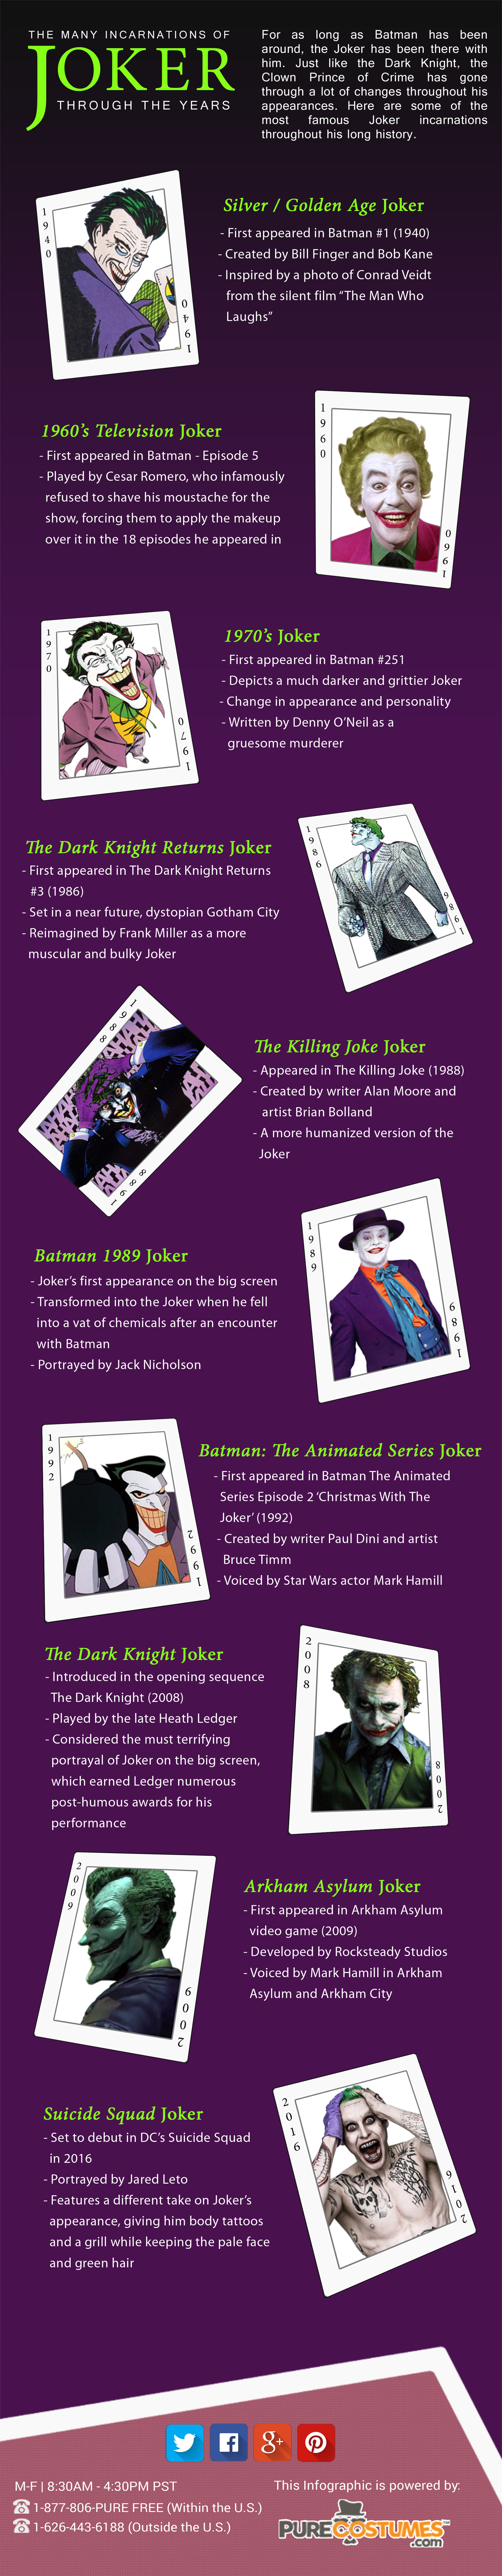 Joker Through The Years Infographic